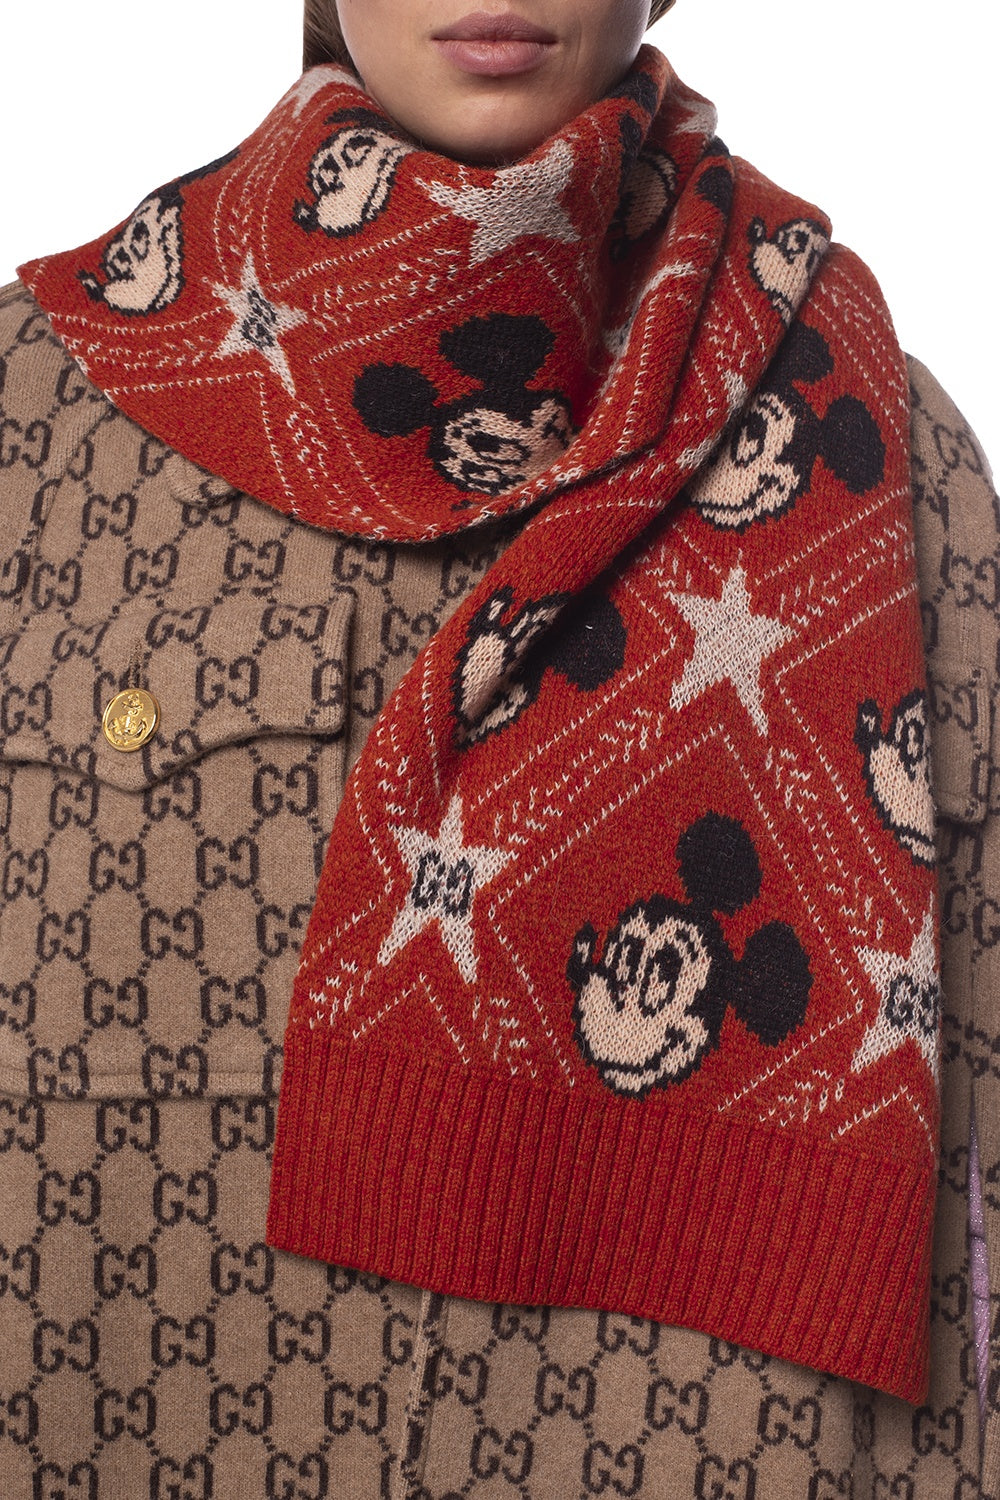 Gucci x Disney Mickey Mouse Scarf - Farfetch